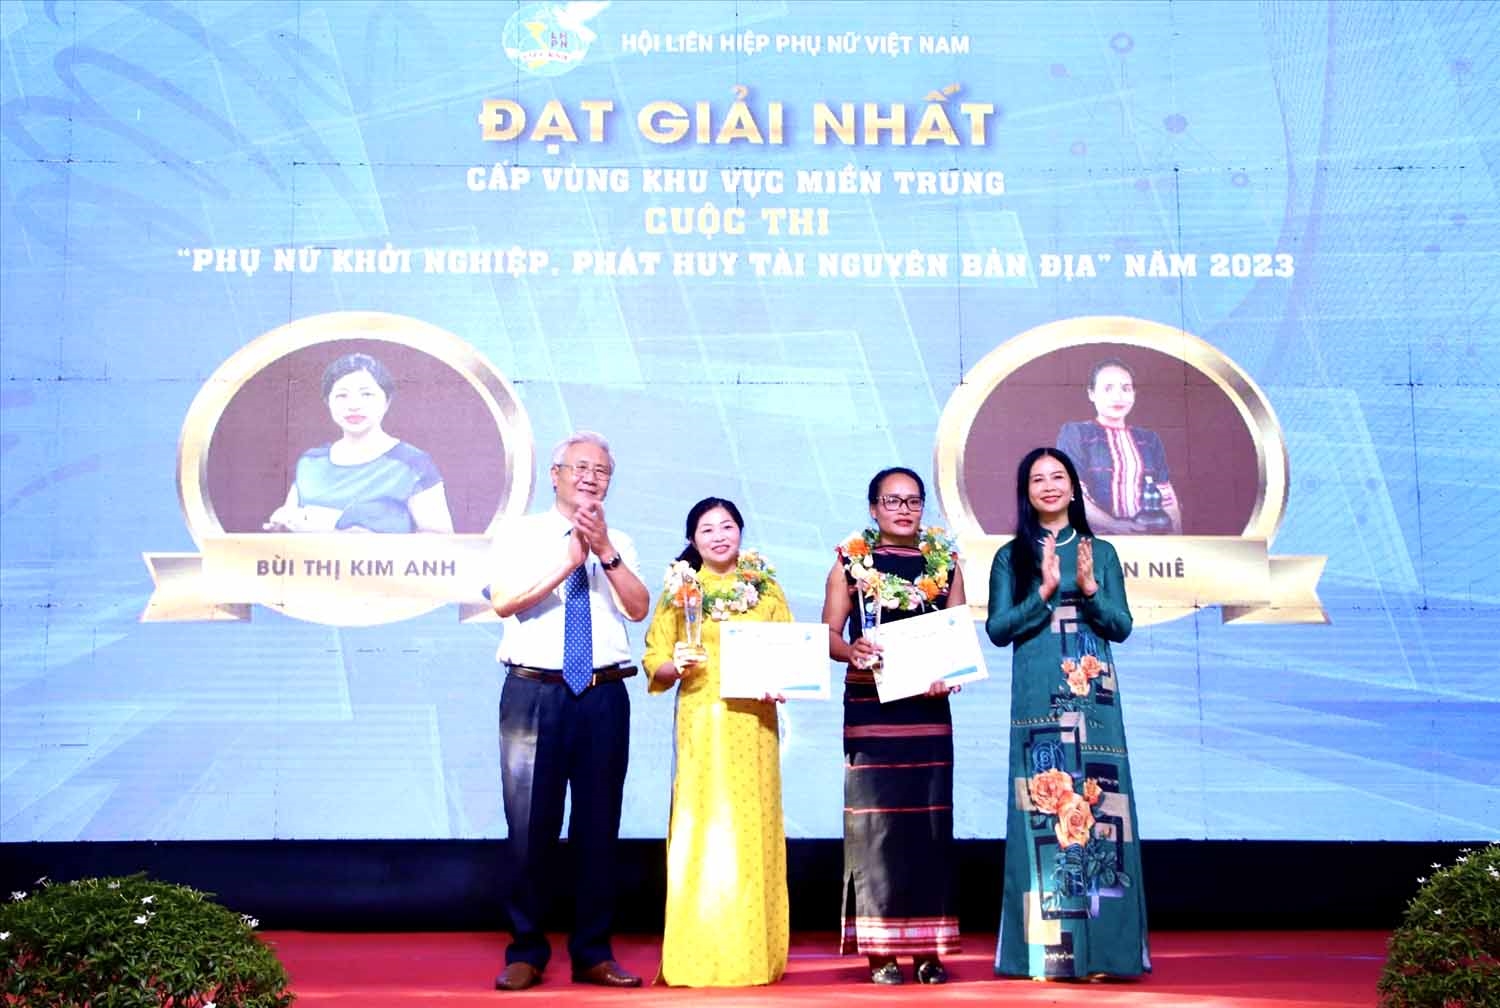 Phó Chủ tịch Hội LHPN Việt Nam Trần Lan Phương (ngoài cùng bên phải) và đại diện Hội đồng giám khảo trao giải Nhất cho 2 thí sinh. Ảnh: T/H